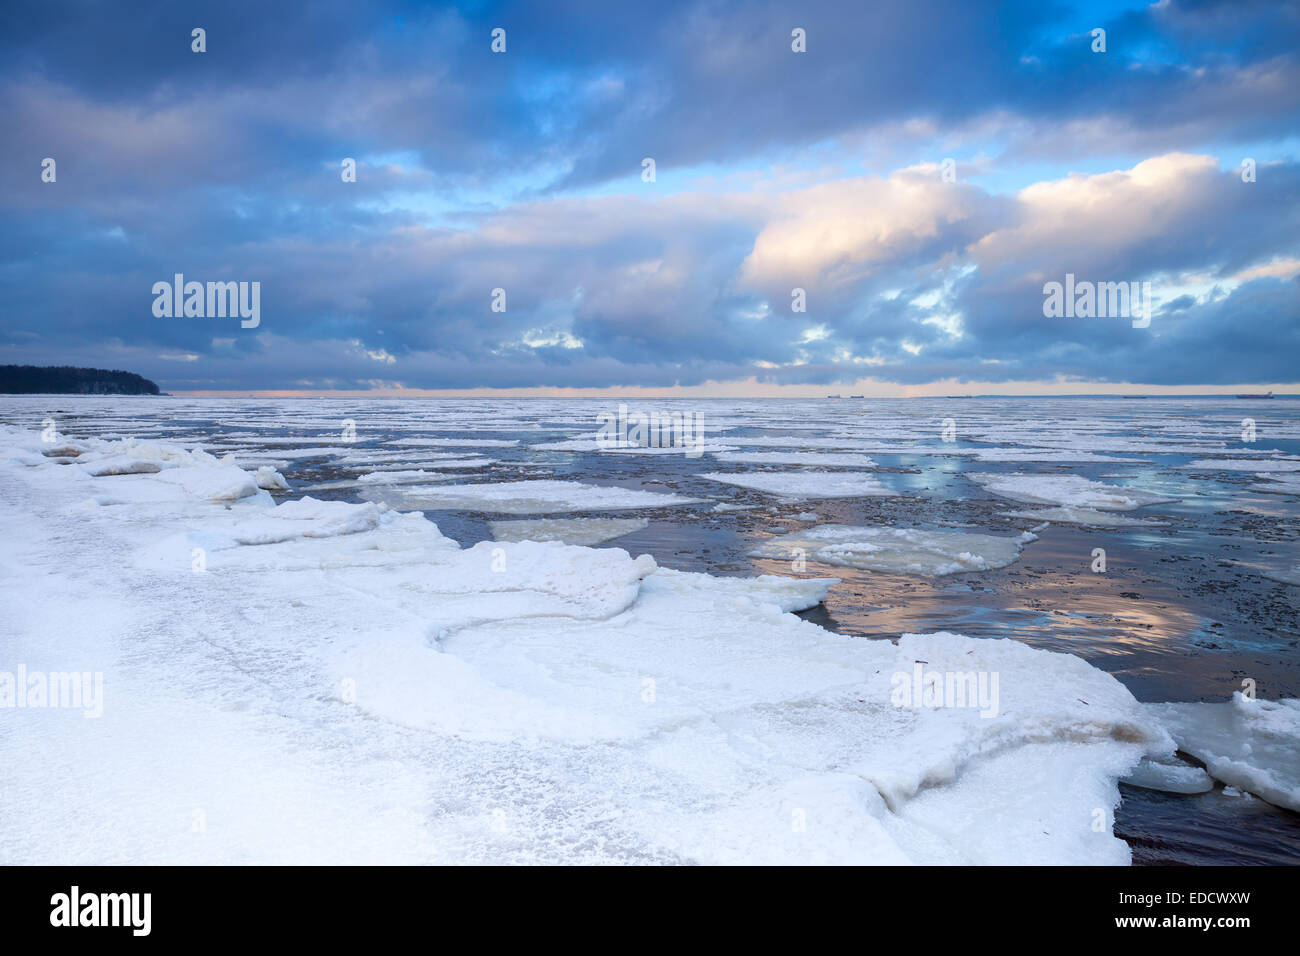 Paysage côtier d'hiver avec des glaces flottantes sur l'eau calme. Golfe de Finlande, Russie Banque D'Images